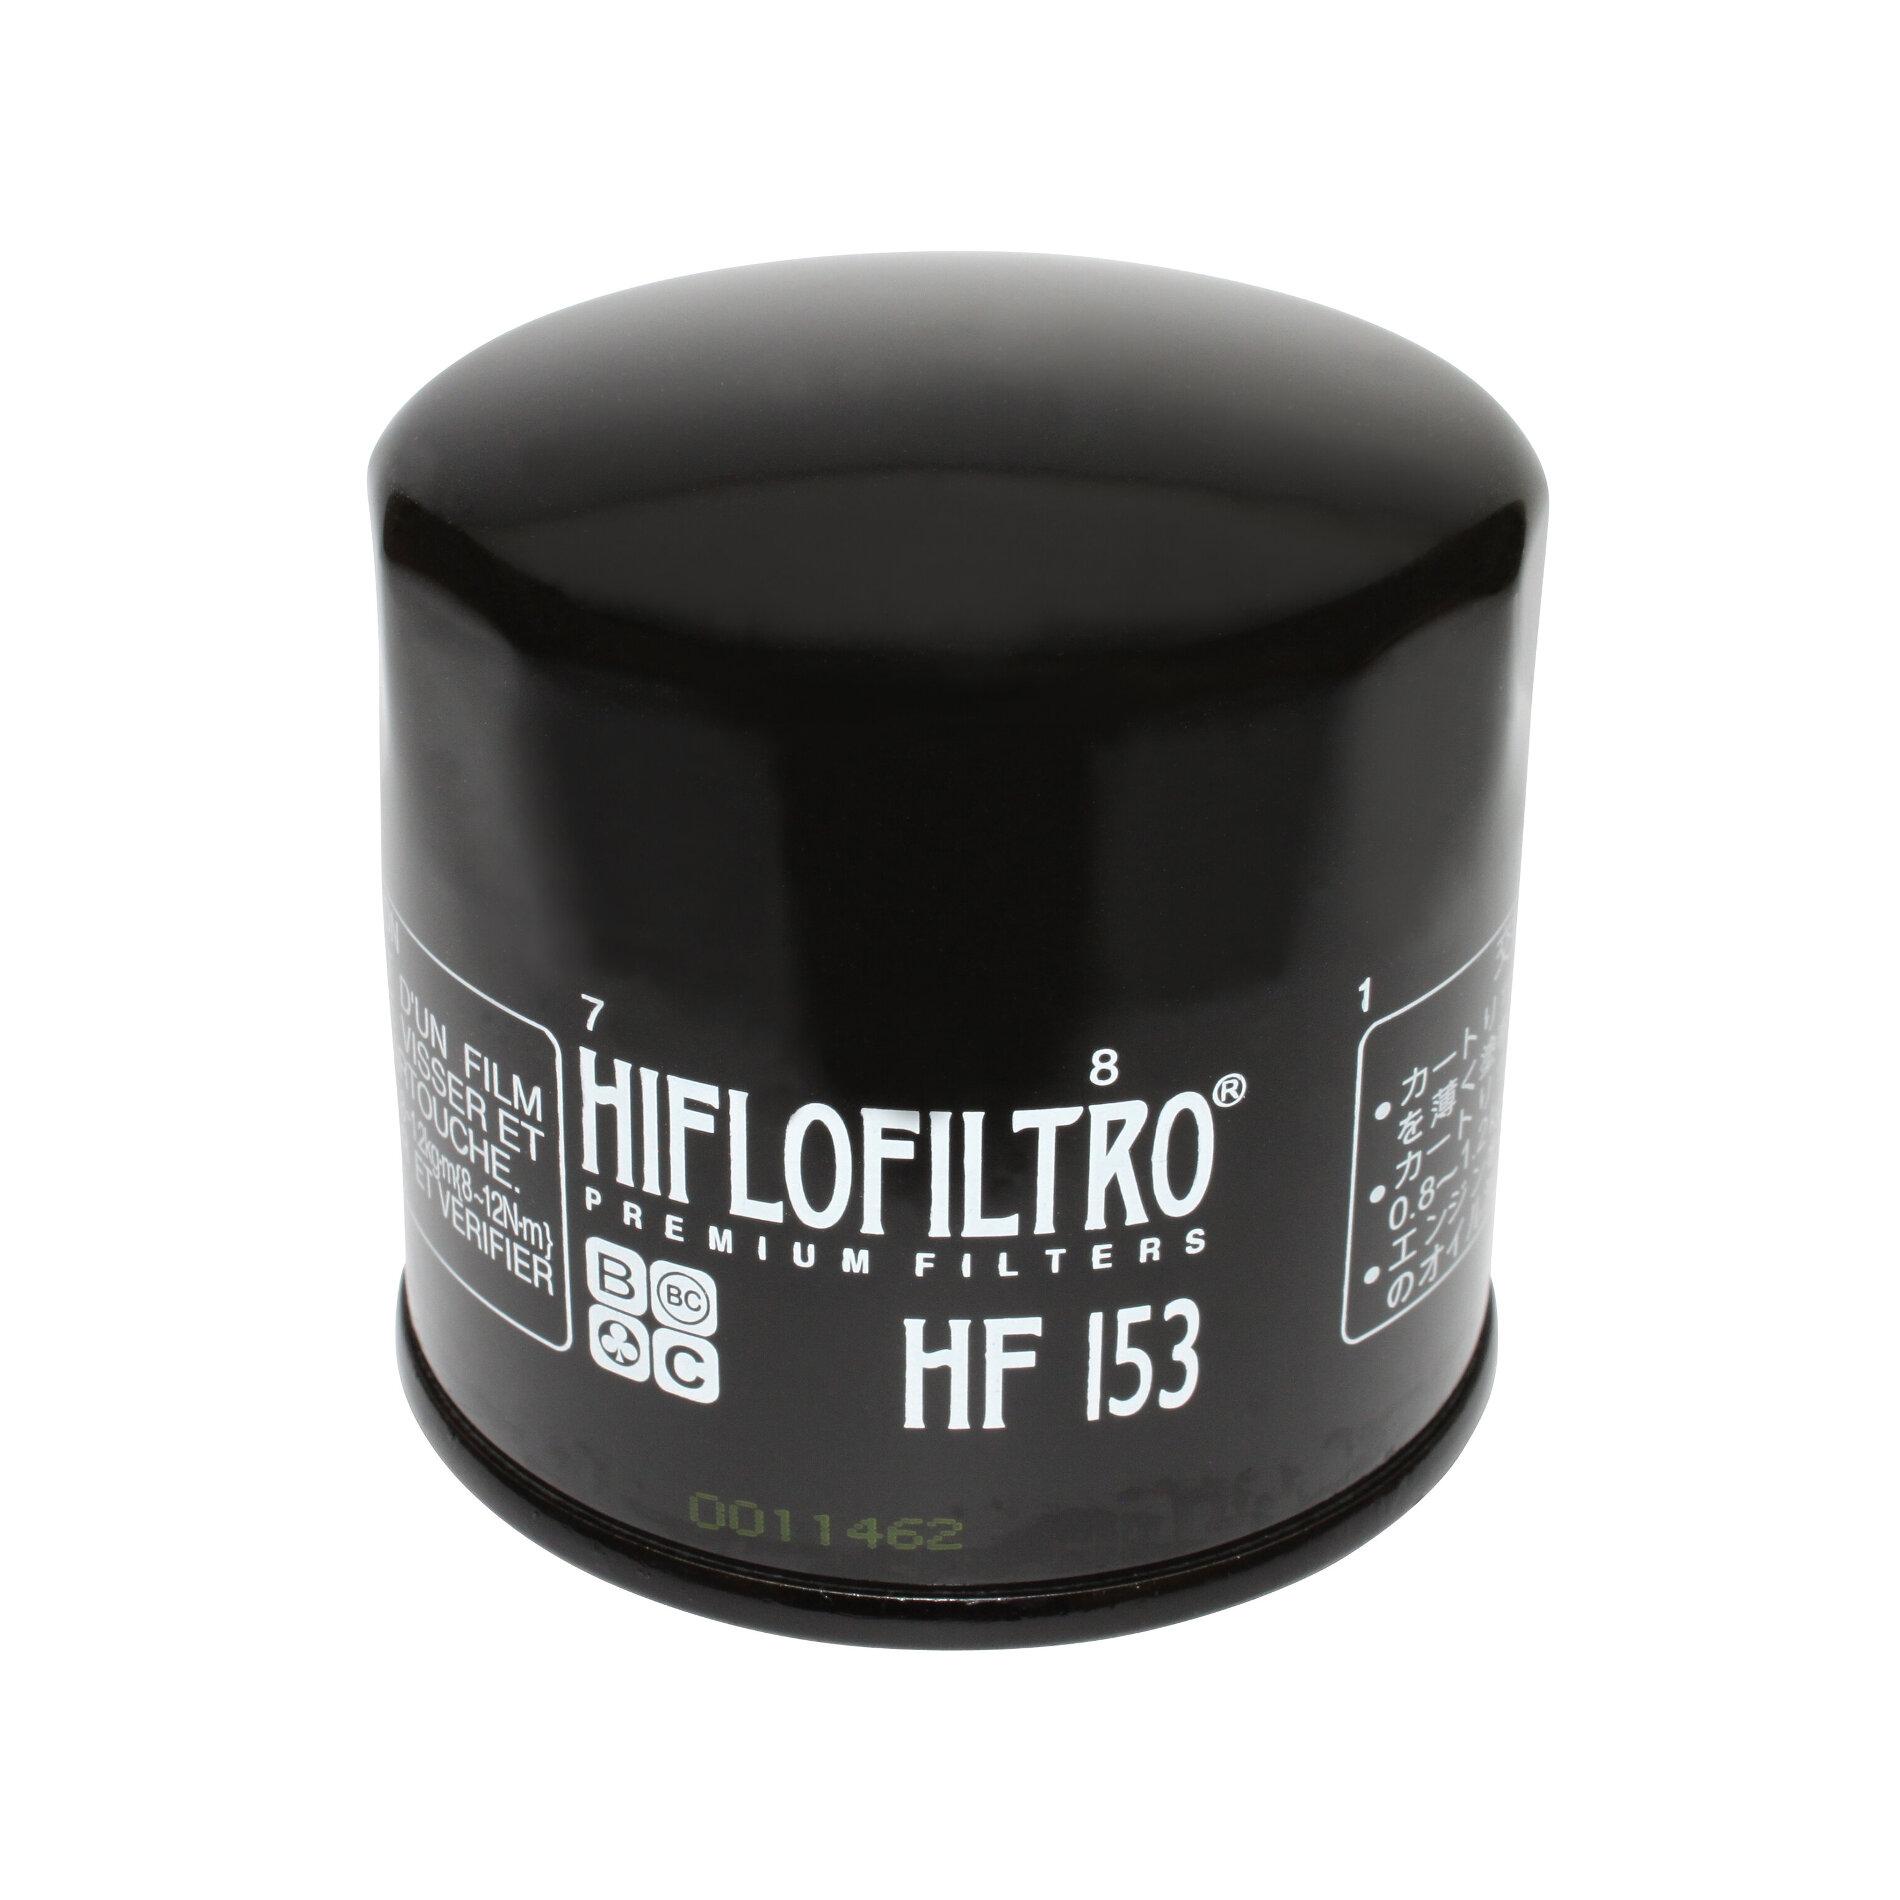 HIFLOFILTRO Oil Filter HF153 Cagiva Elefant 89-98 Ducati 